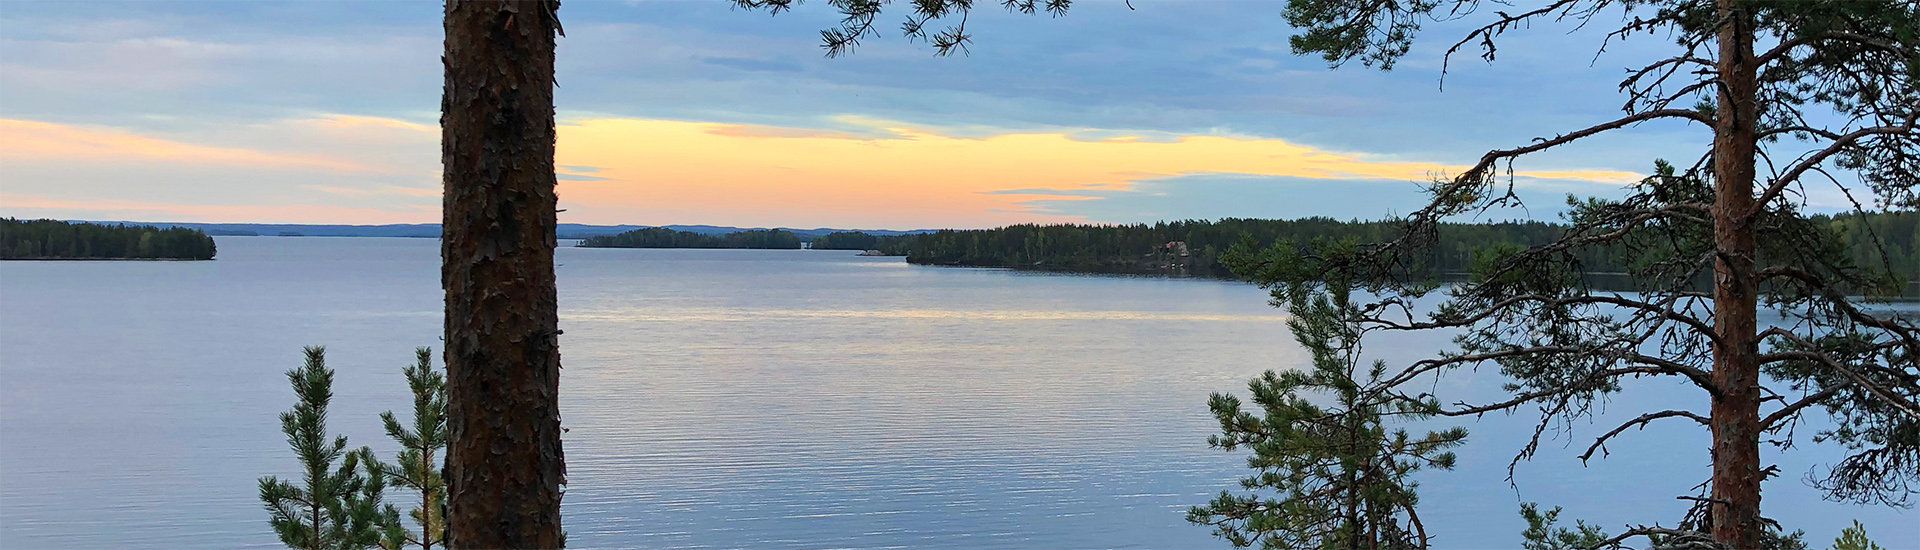 Abendstimmung am See - irgendwo in Finnland